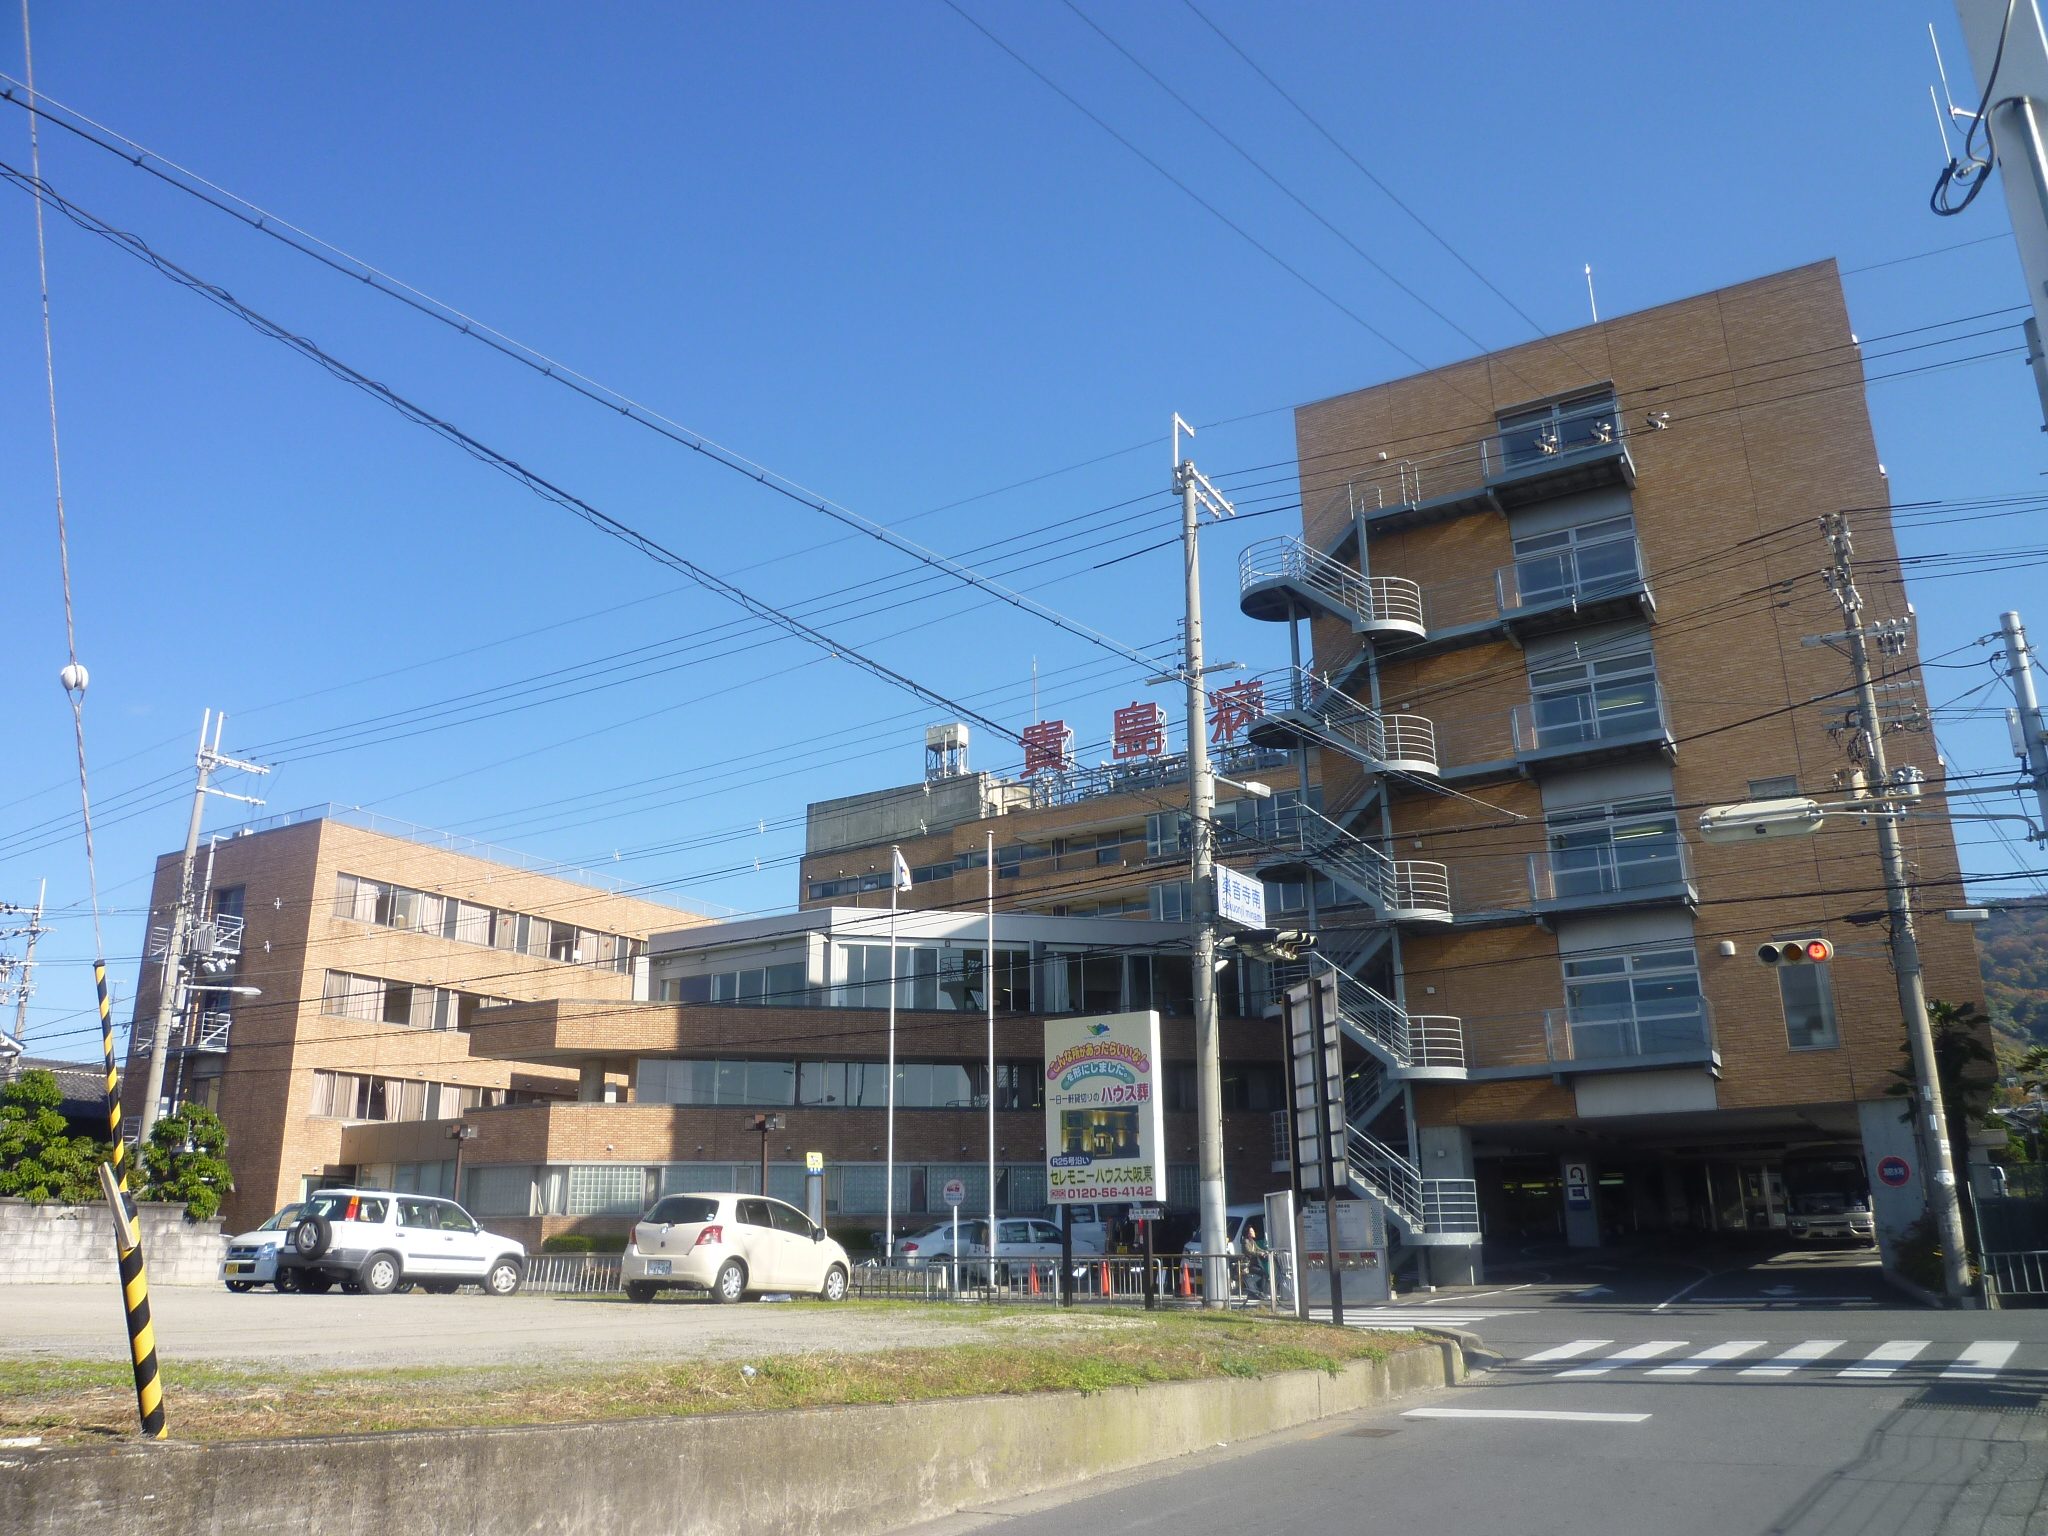 Hospital. Kijima Board Kijima hospital this Council to (hospital) 125m